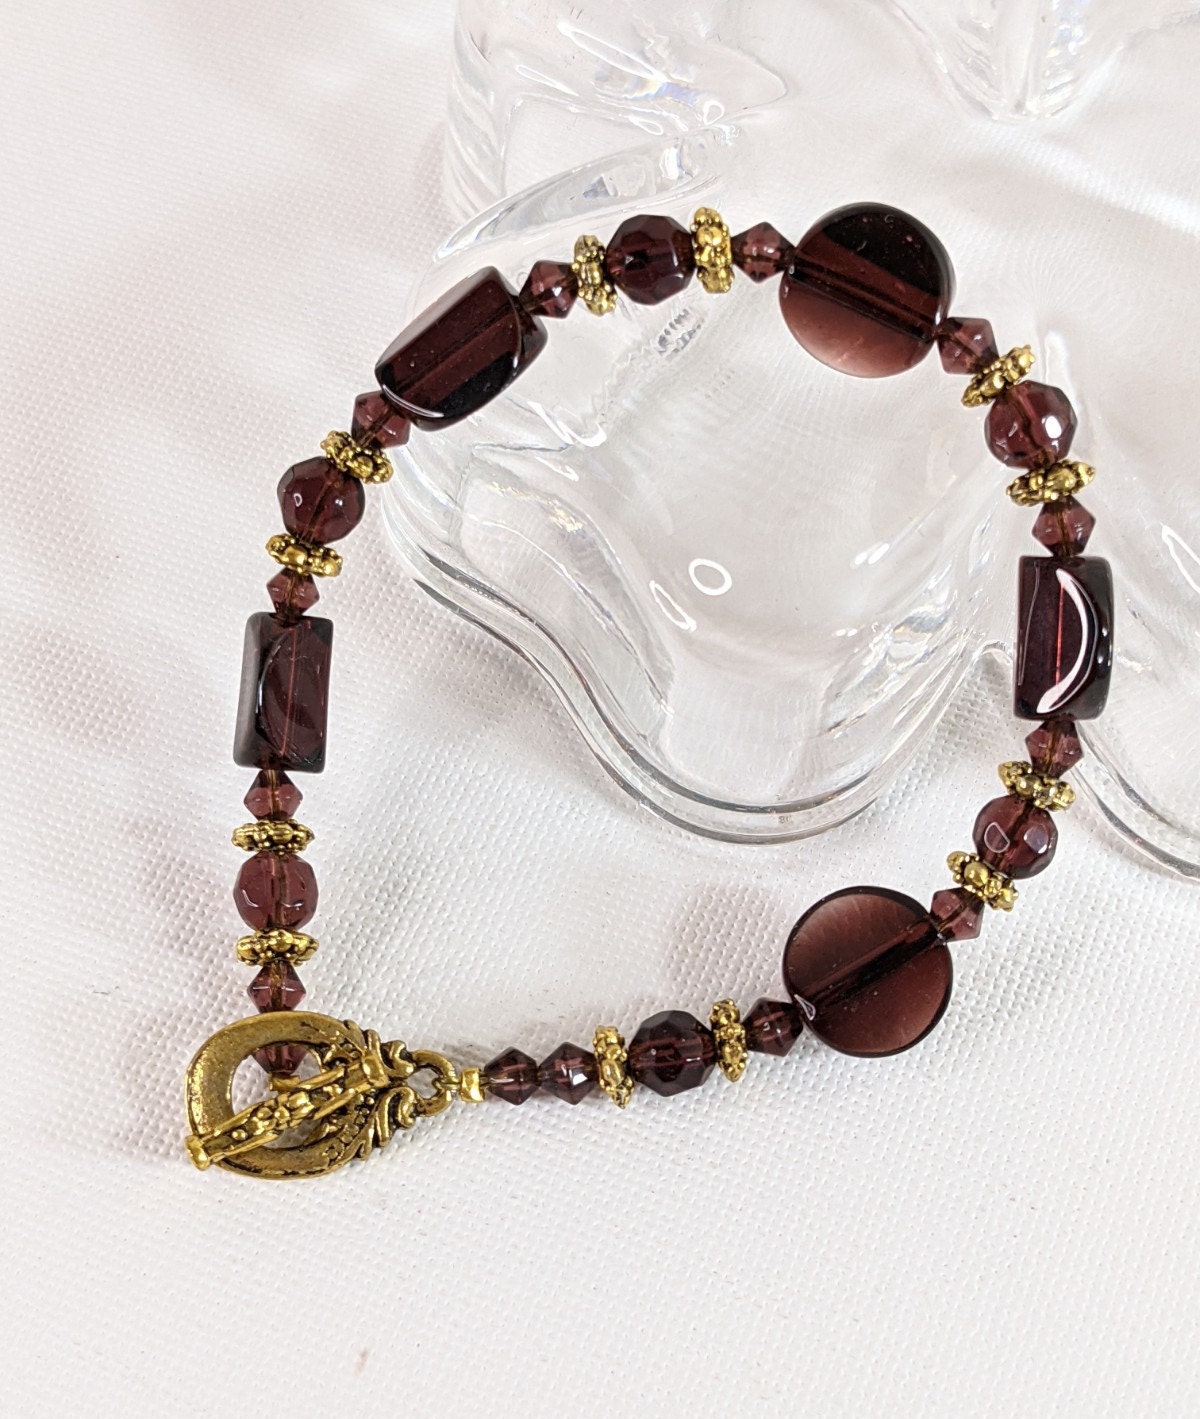 Mixed Small Glass Beads, 1.5 Oz Jewelry Making Beads, Craft Beads